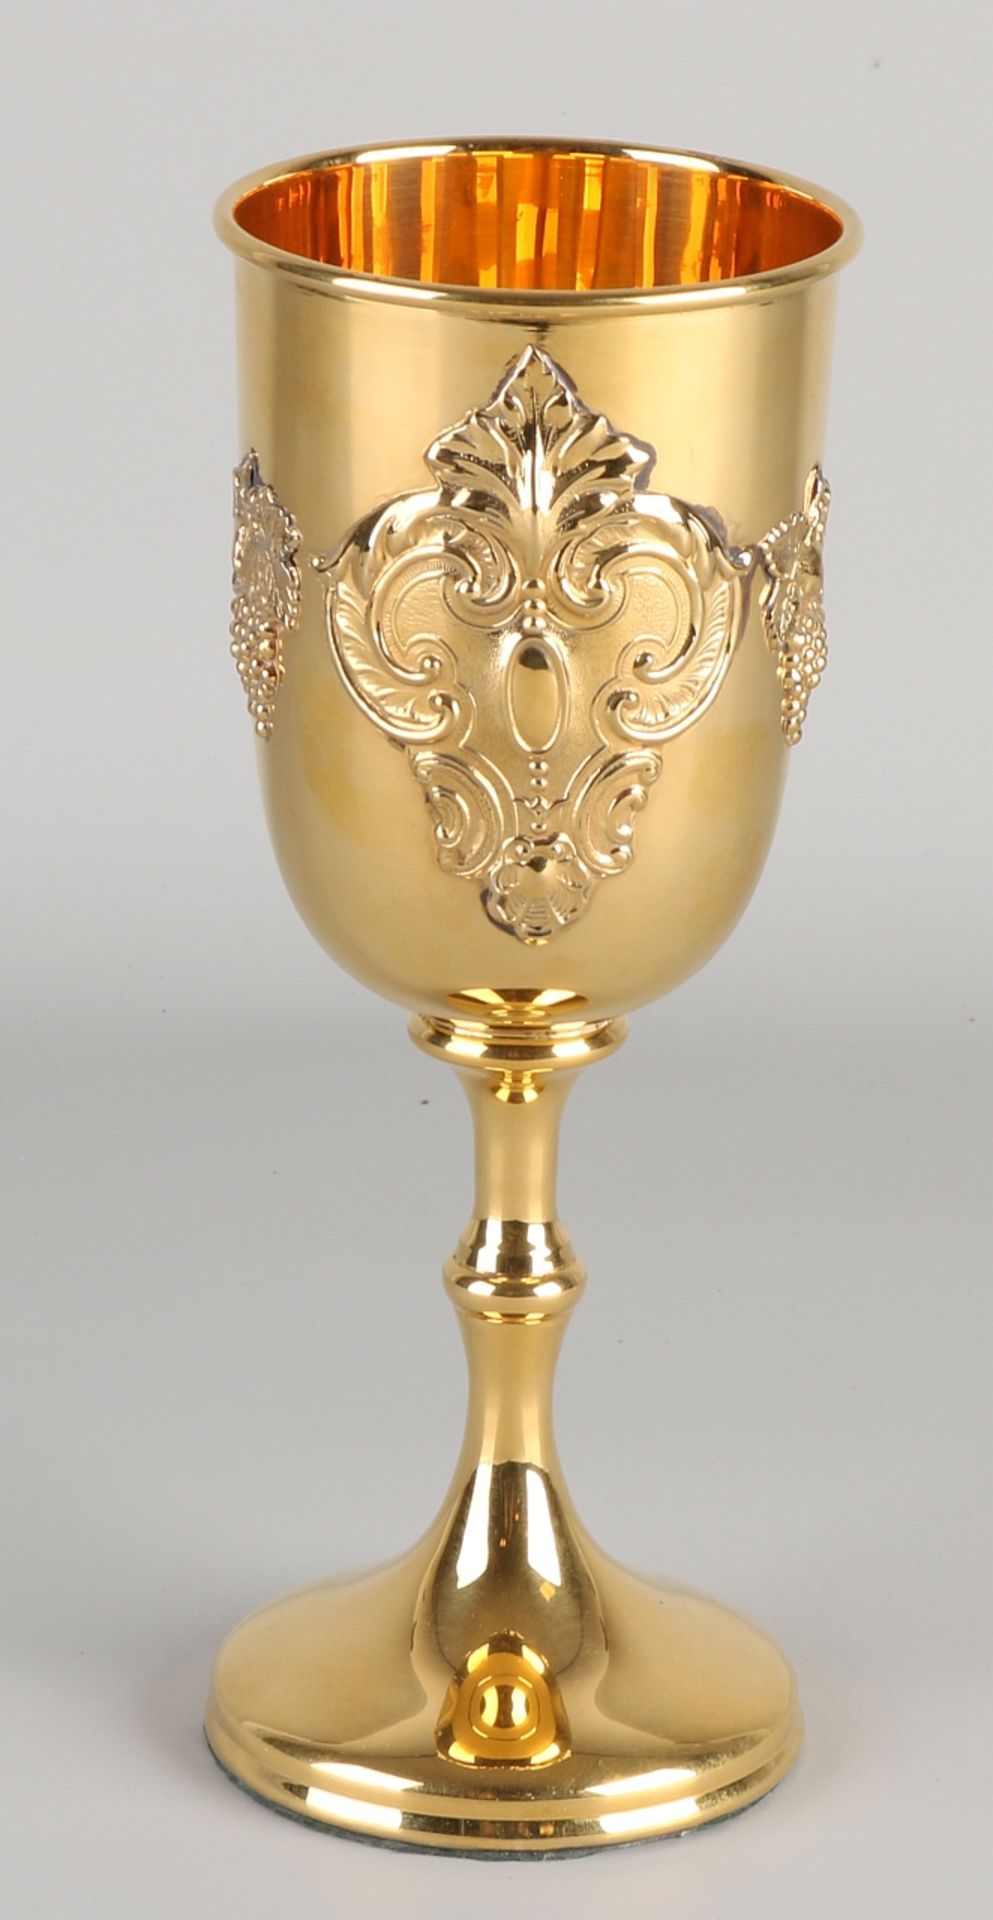 Silbervergoldeter Kelch, 925/000, auf einen runden Boden gestellt. Der Kelch ist mit einem Ornamen